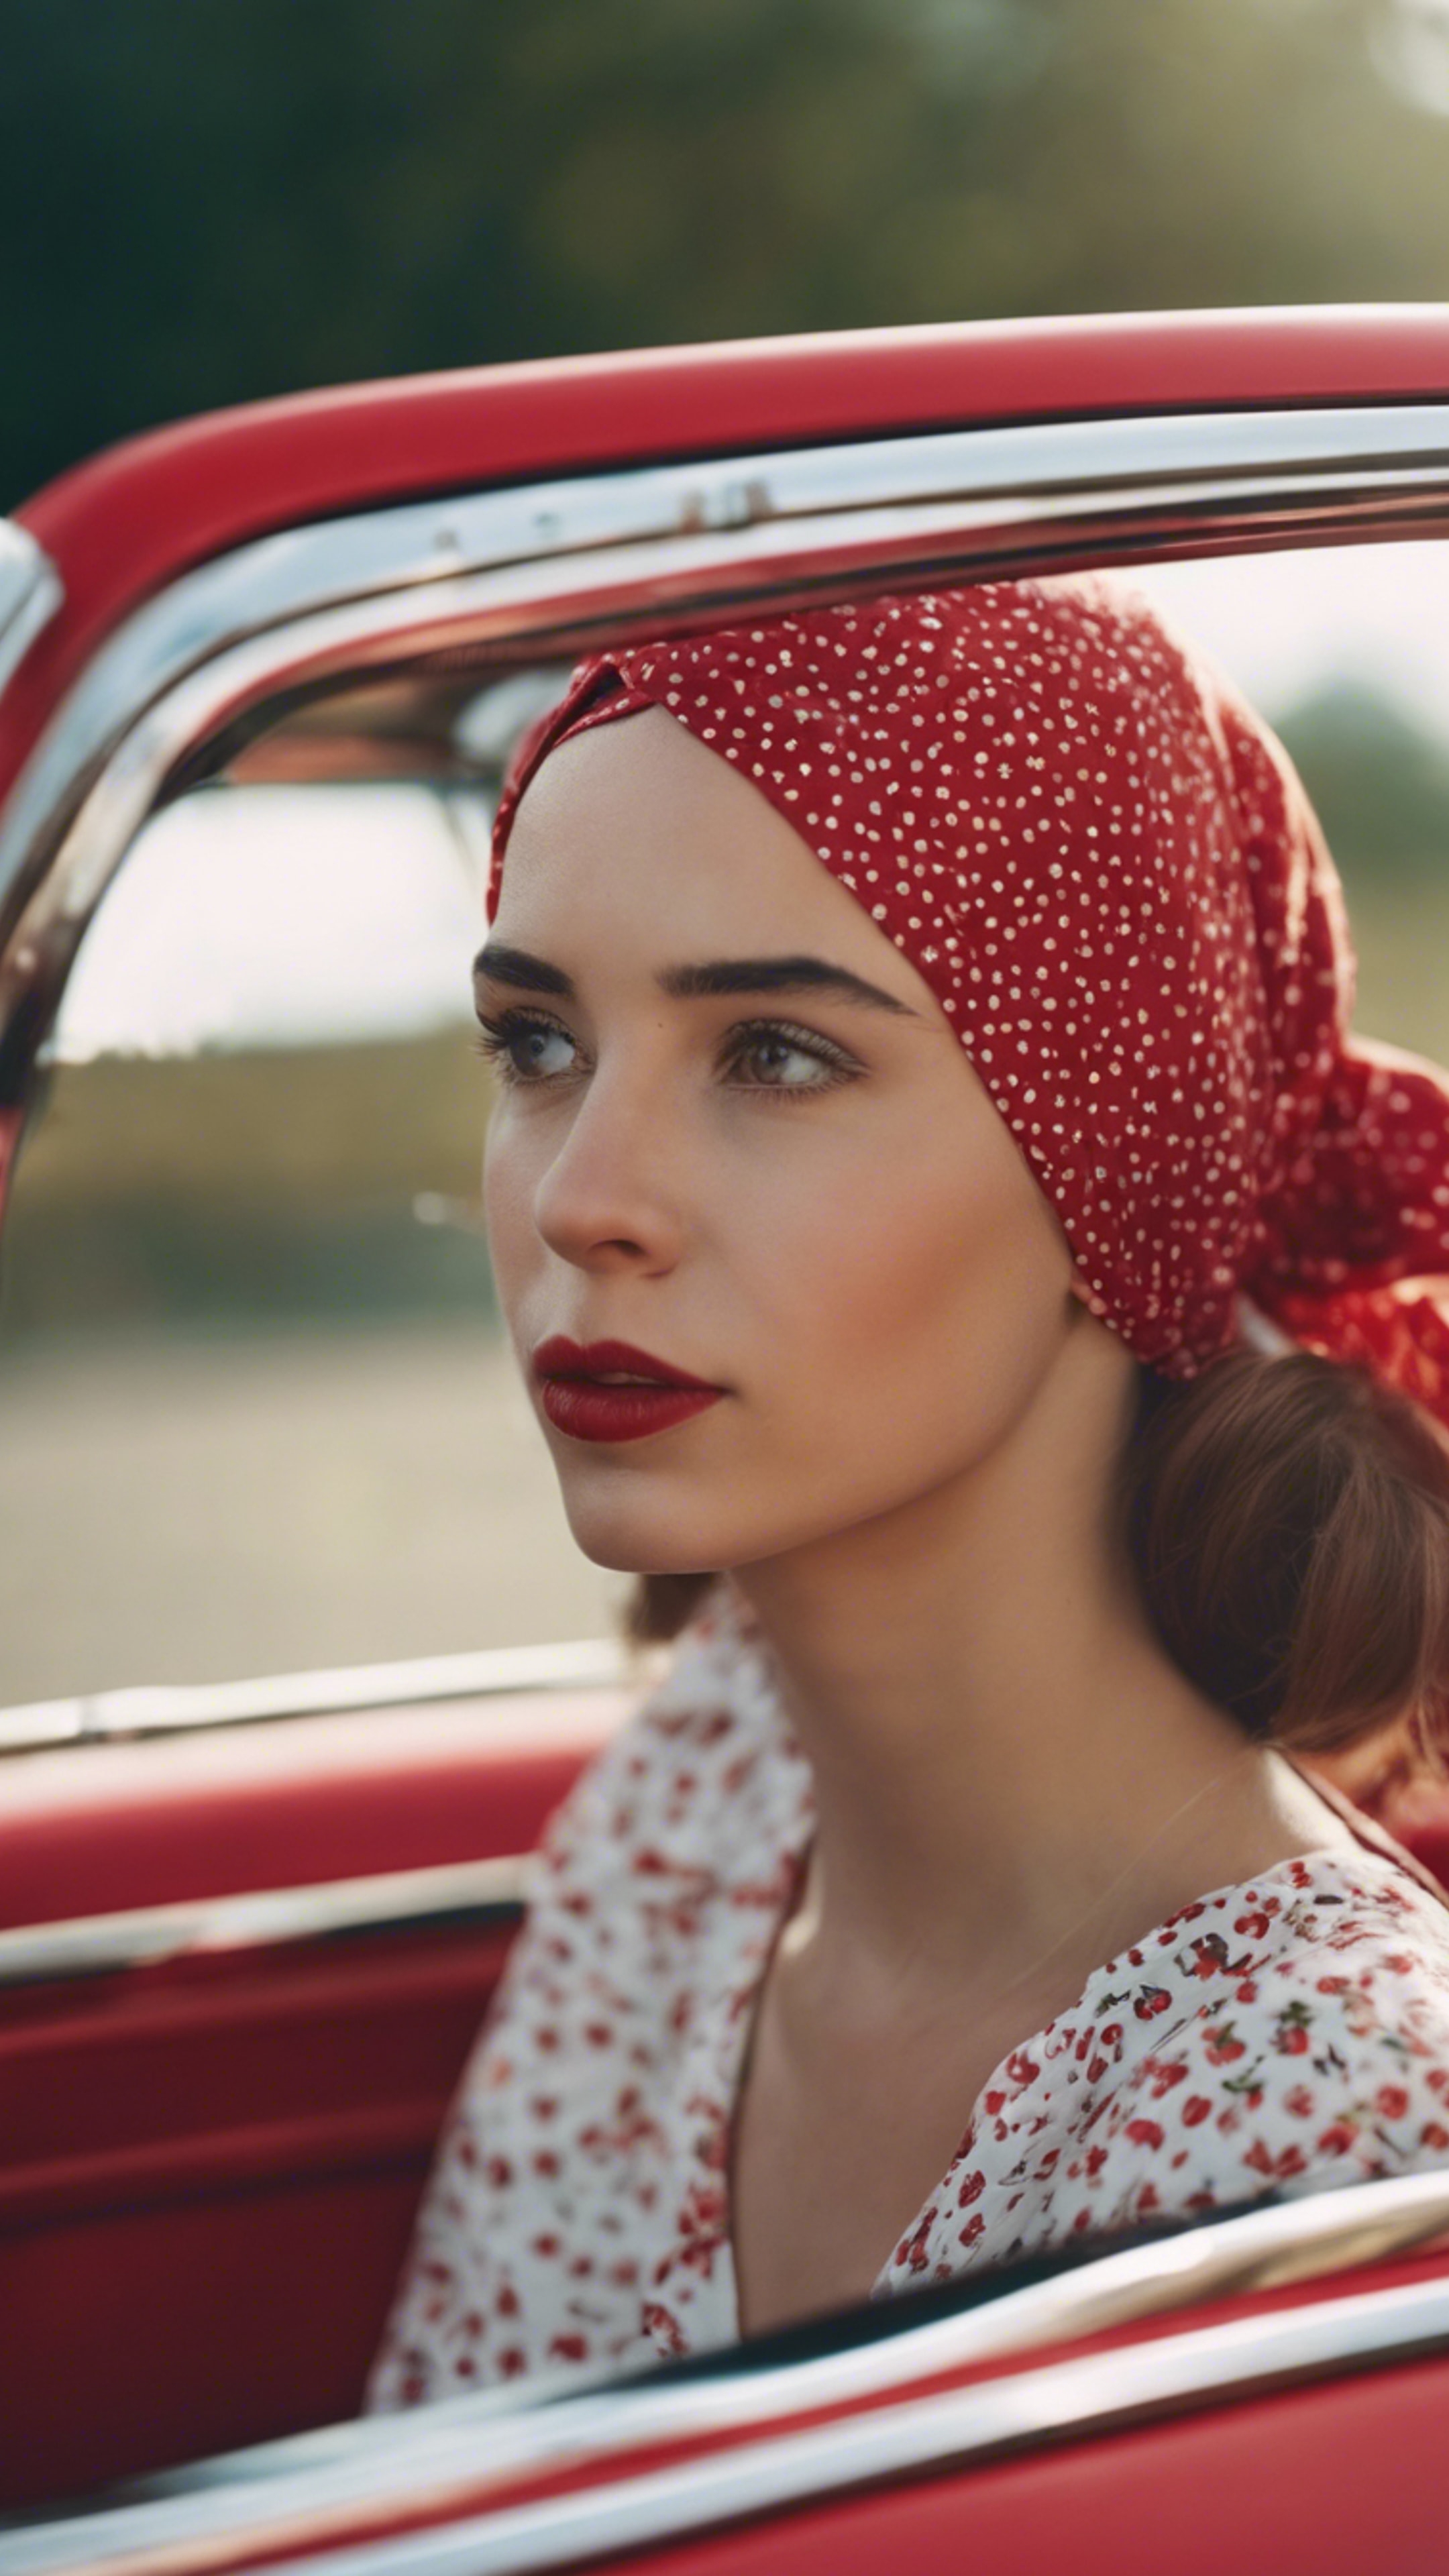 A young woman wearing a cherry print headscarf, driving a red vintage car.壁紙[b168b4b9cb5747bd9b5d]